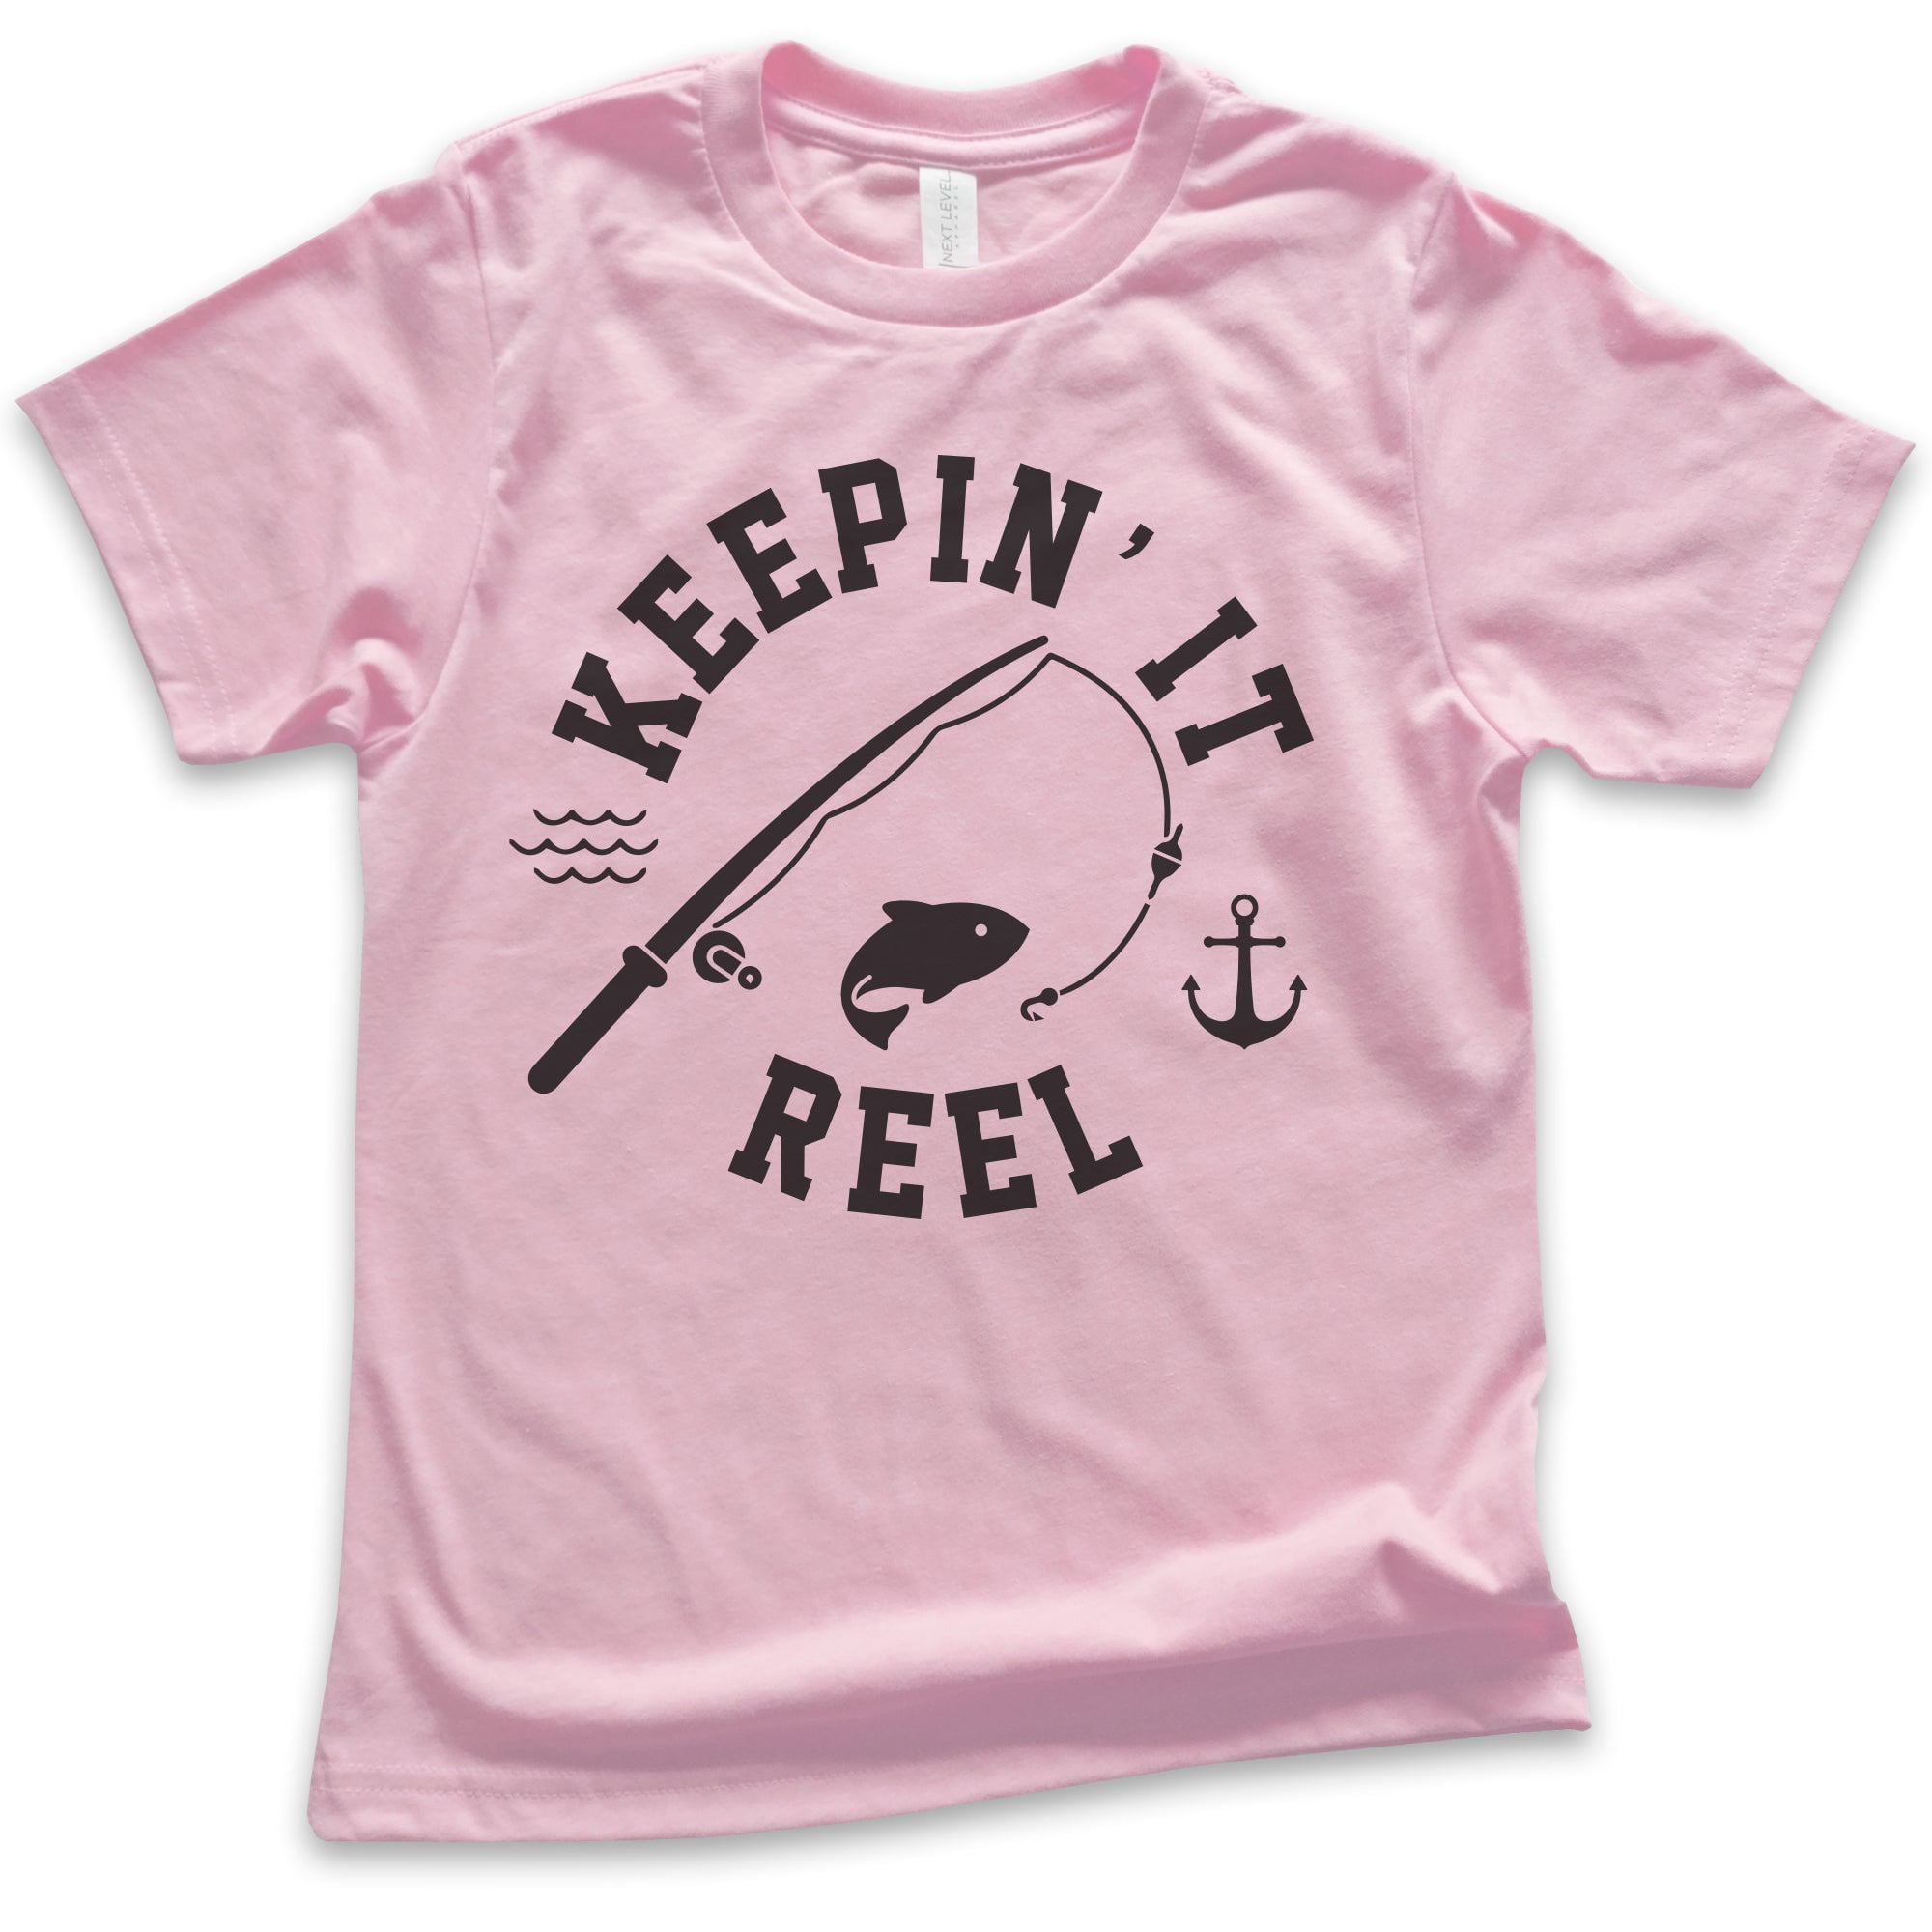 Kids Keepin' It Reel Shirt, Youth Kids Boy Girl T-Shirt, Fishing Shirt,  Fish Pun Shirt, Light Pink, Large